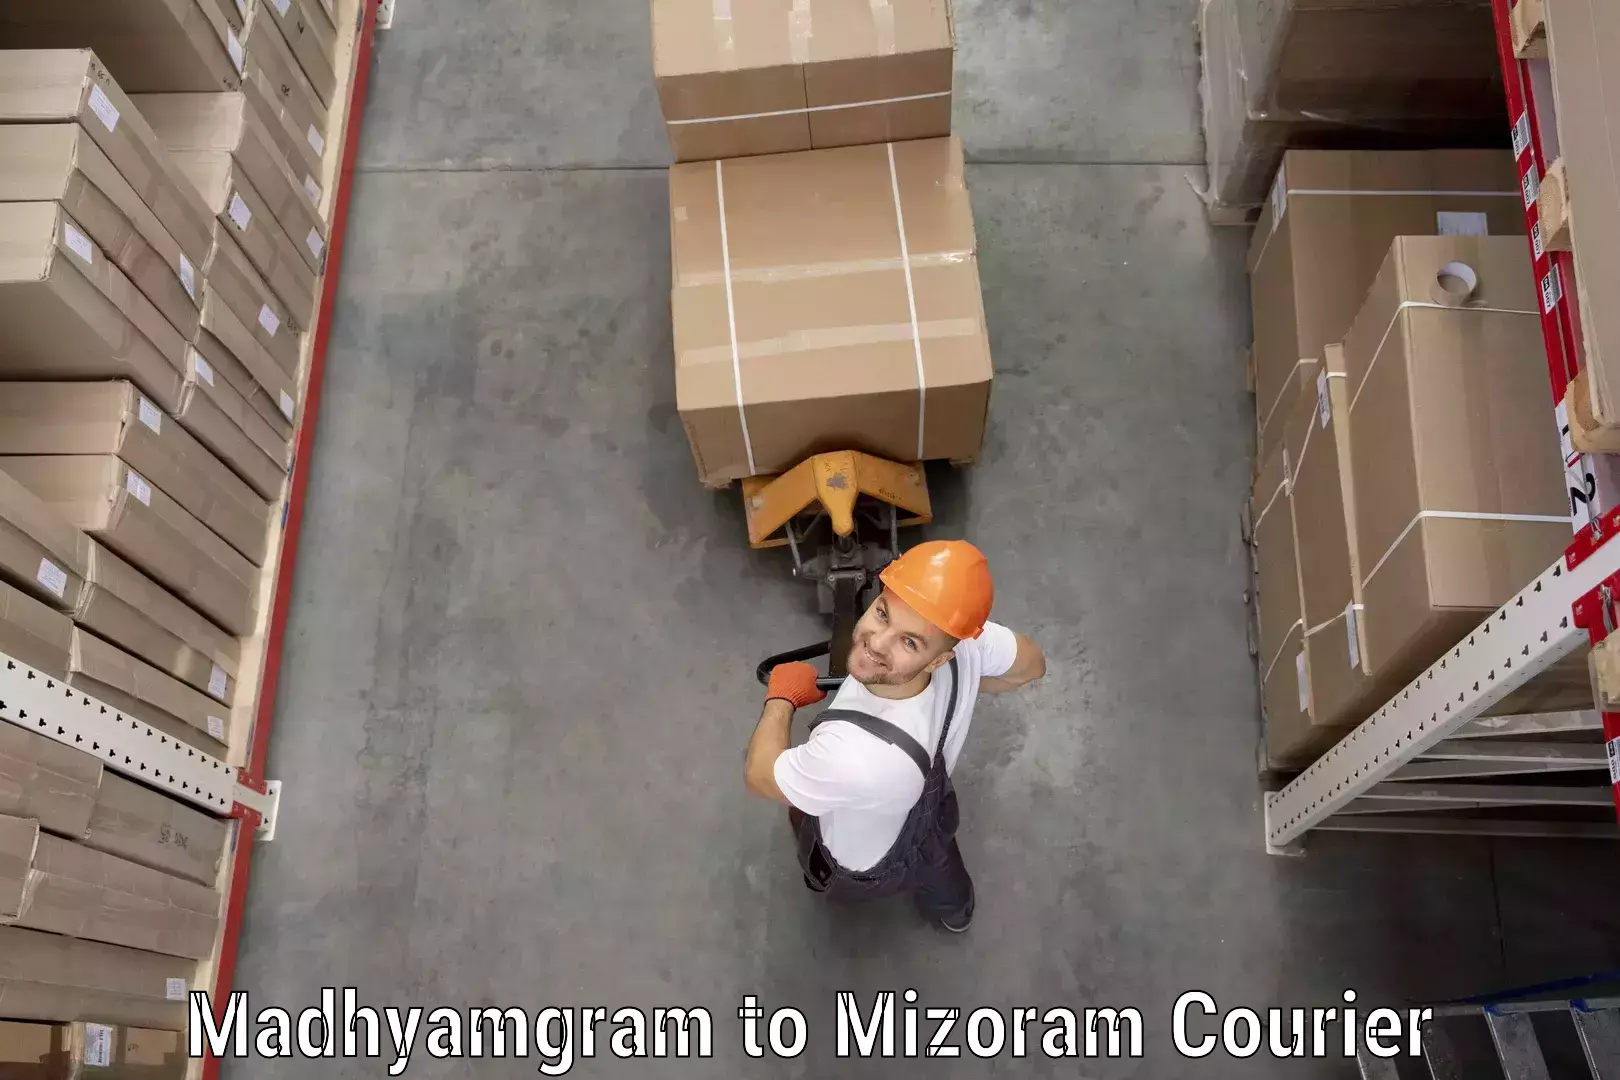 Digital courier platforms Madhyamgram to Mizoram